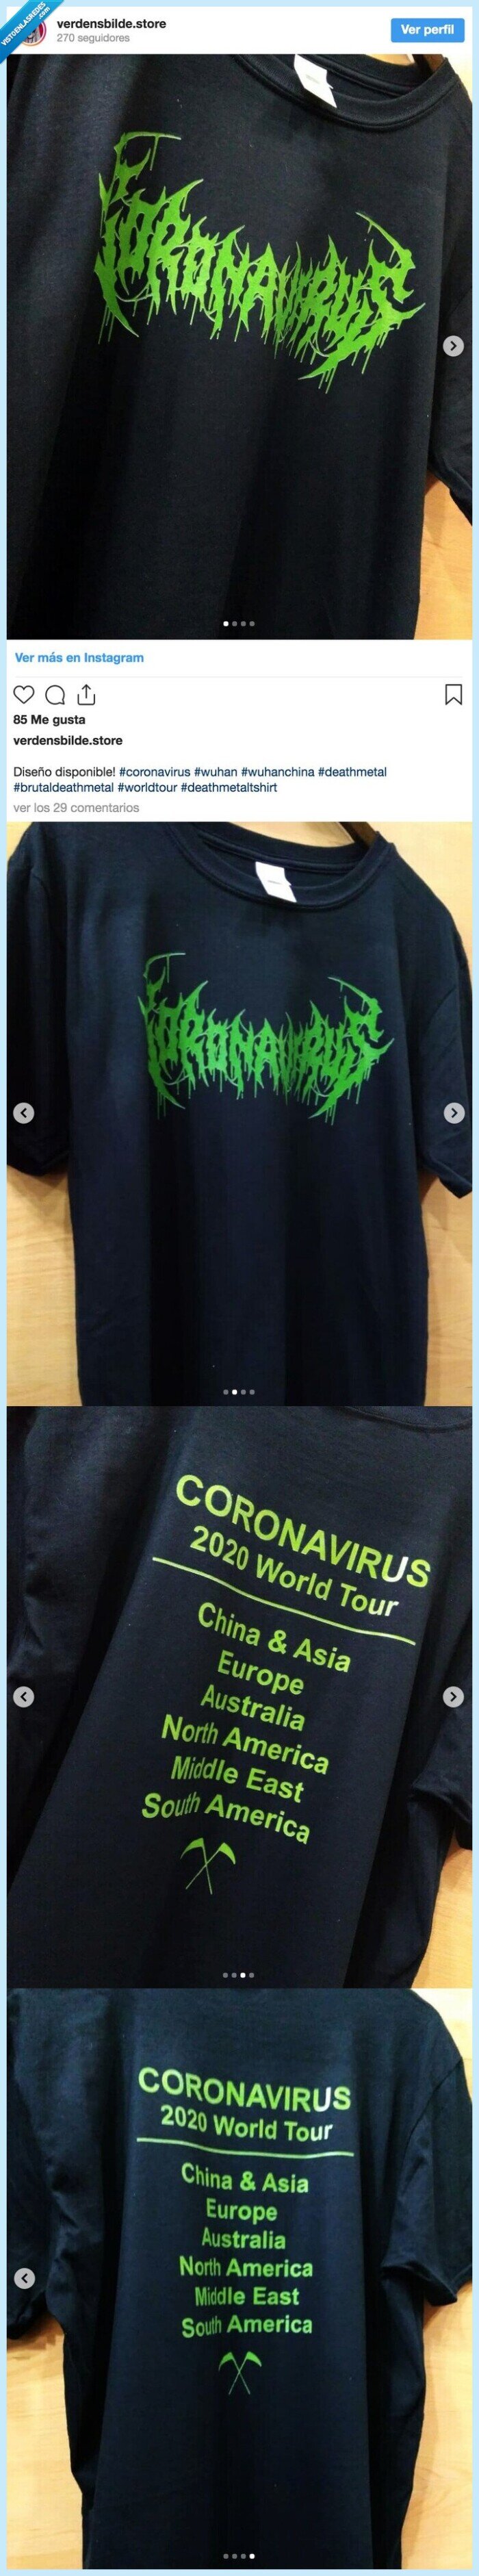 coronavirus world tour,camiseta,omg